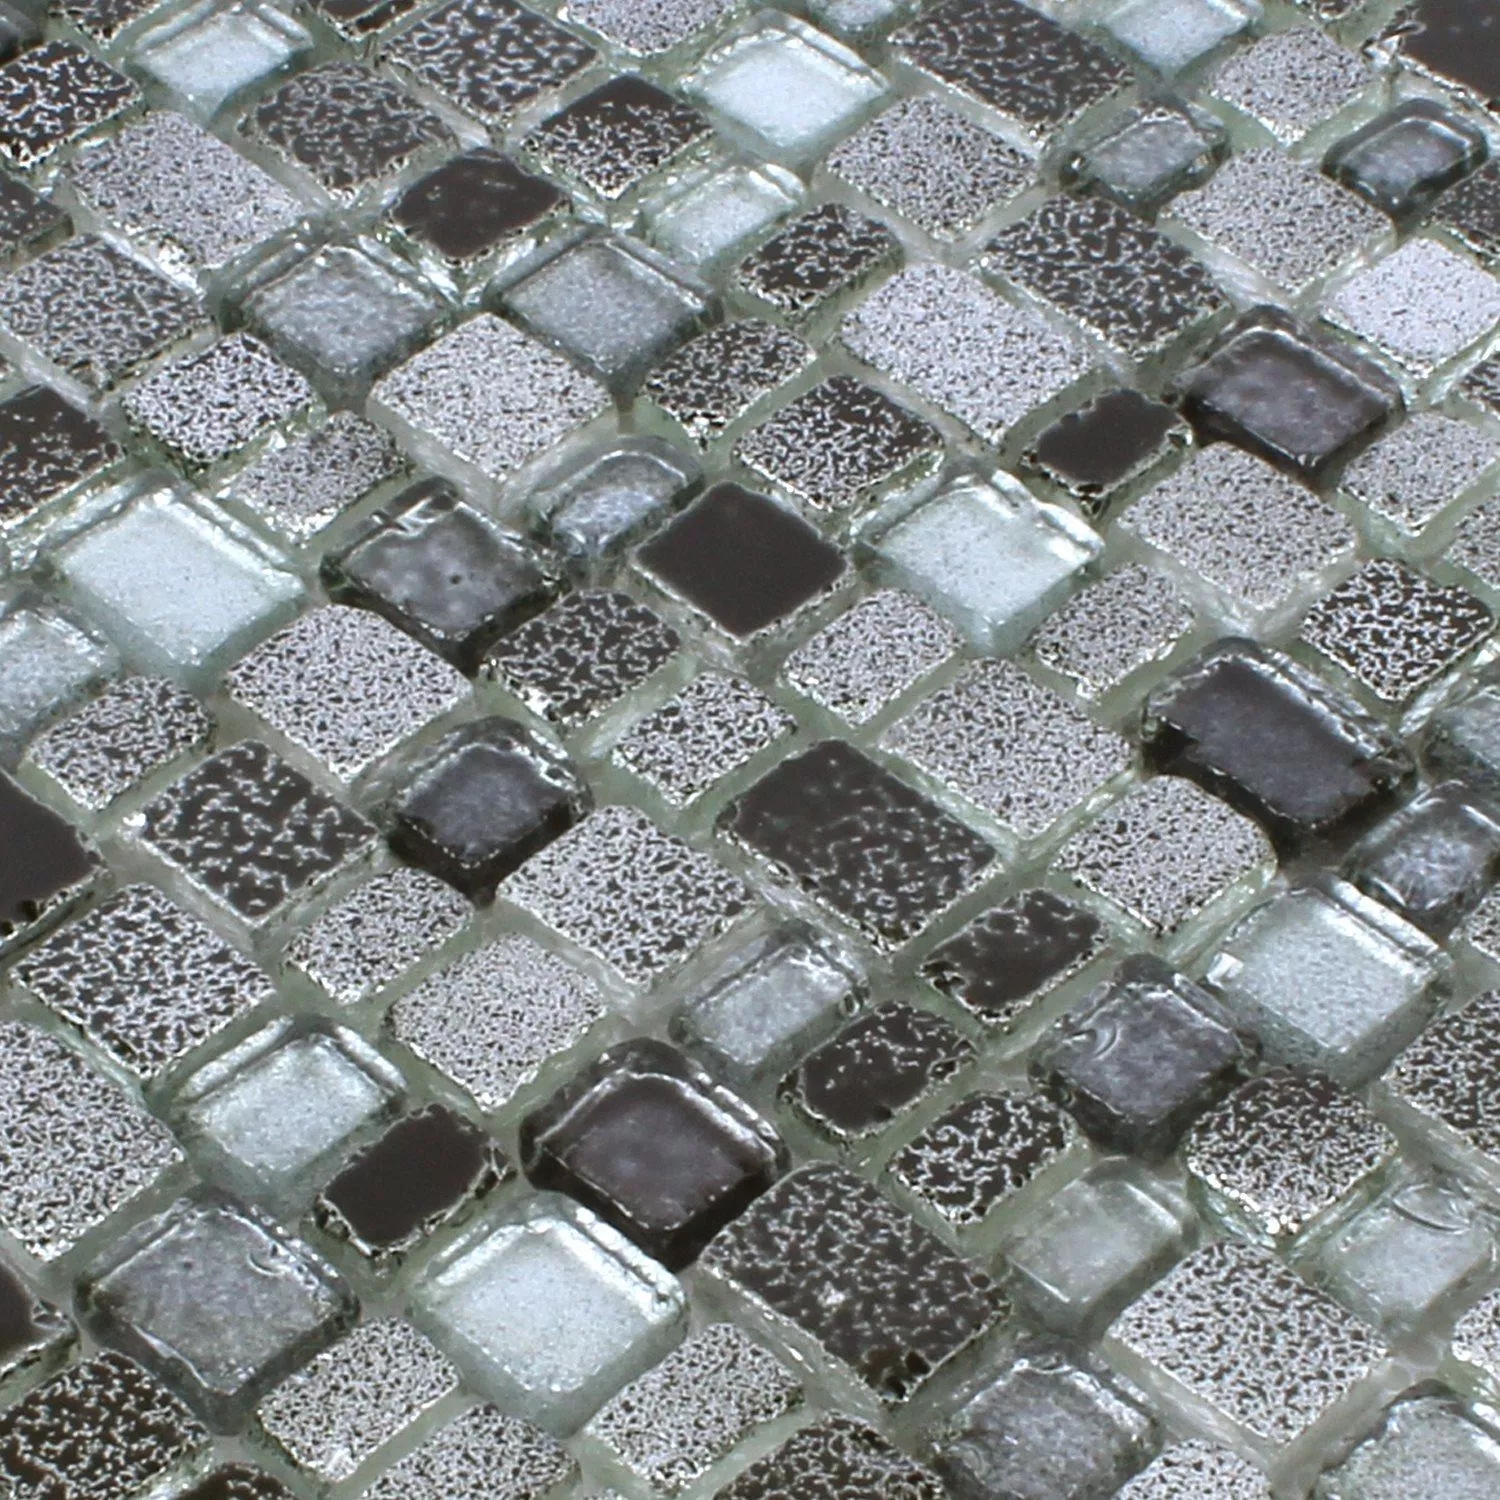 Mosaic Tiles Glass Roxy Black Silver